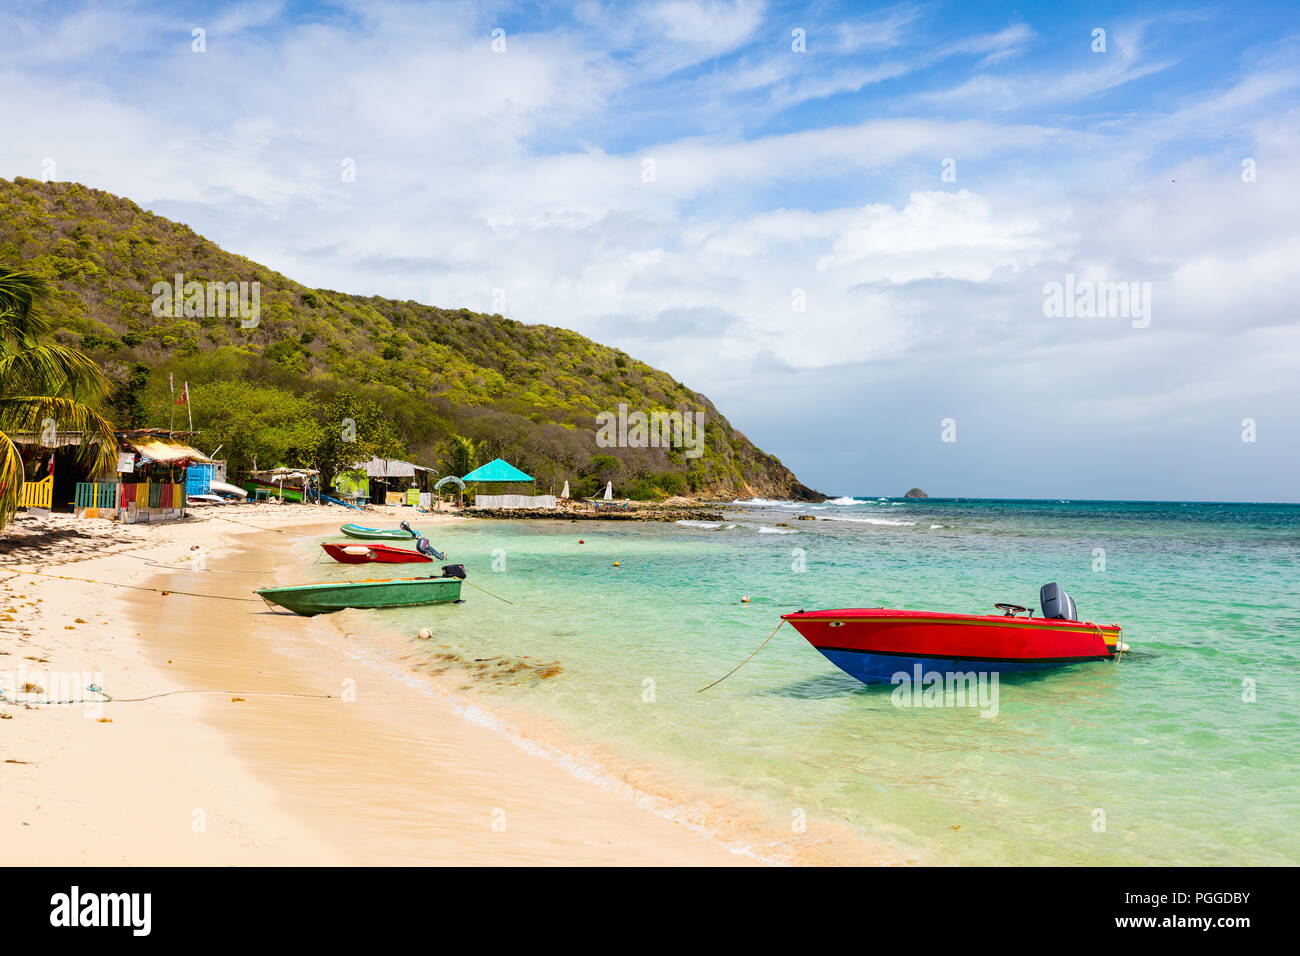 Tropical idílica playa de arena blanca, palmeras y aguas turquesas del Mar Caribe en la isla de Mayreau agua en San Vicente y las Granadinas Foto de stock